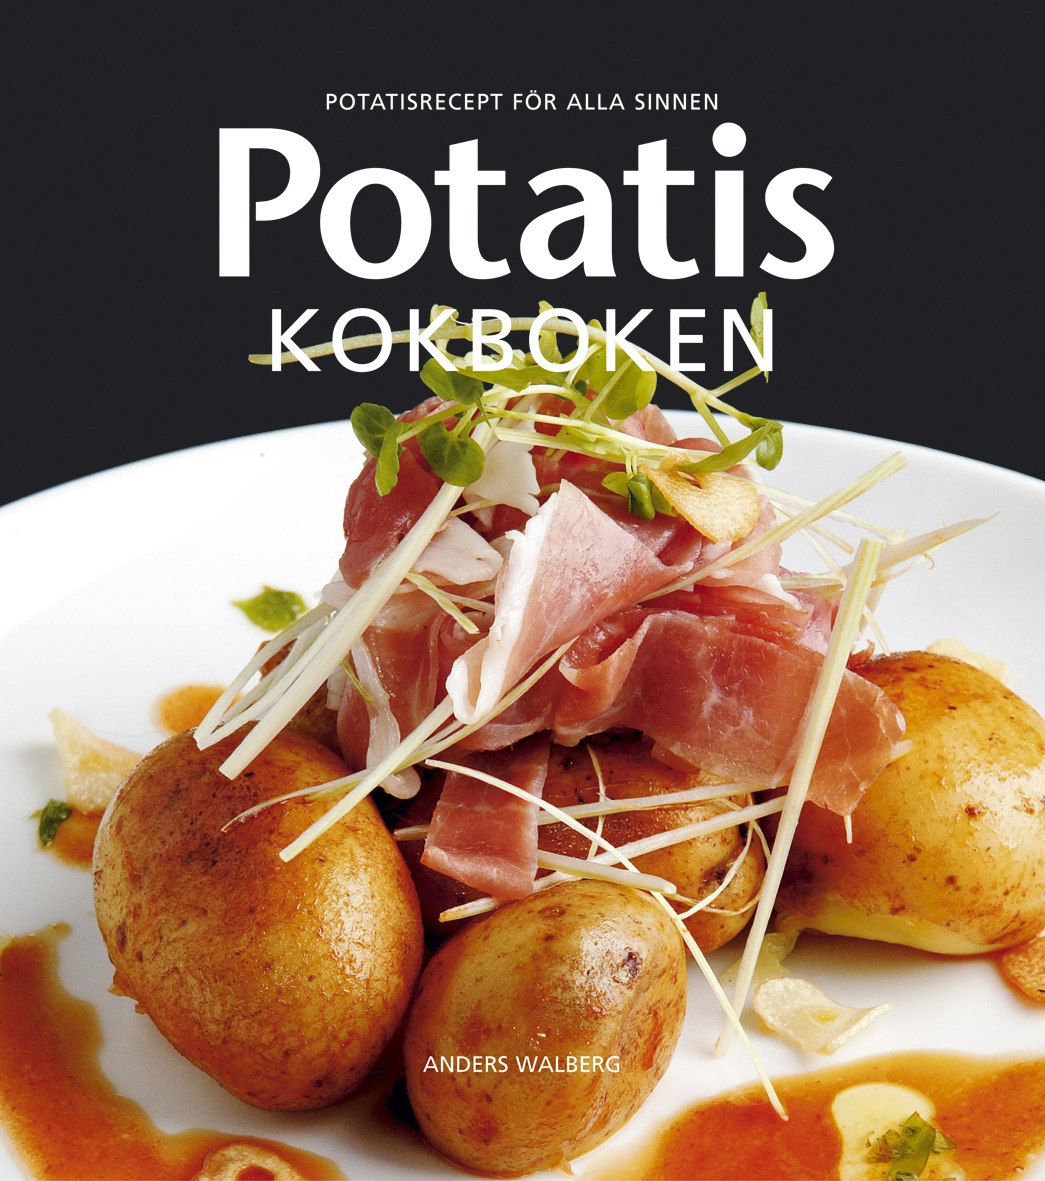 Potatis Kokboken - Potatisrecept för alla sinnen